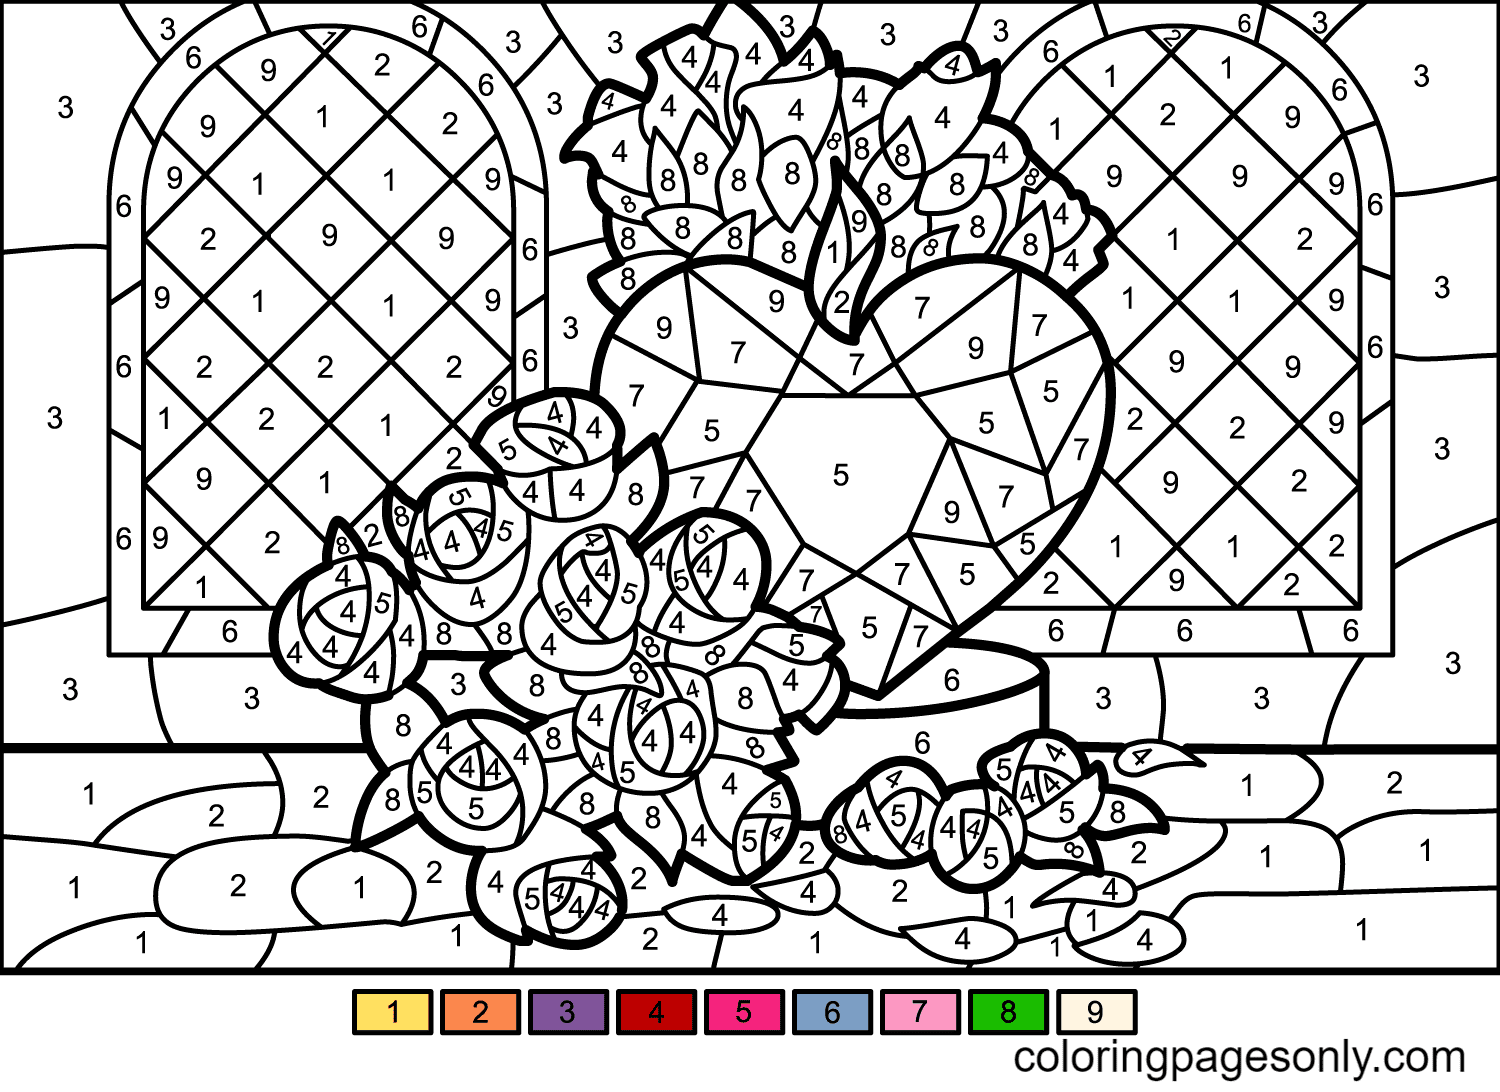 Roses et coeurs à colorier par numéro de Color by Number